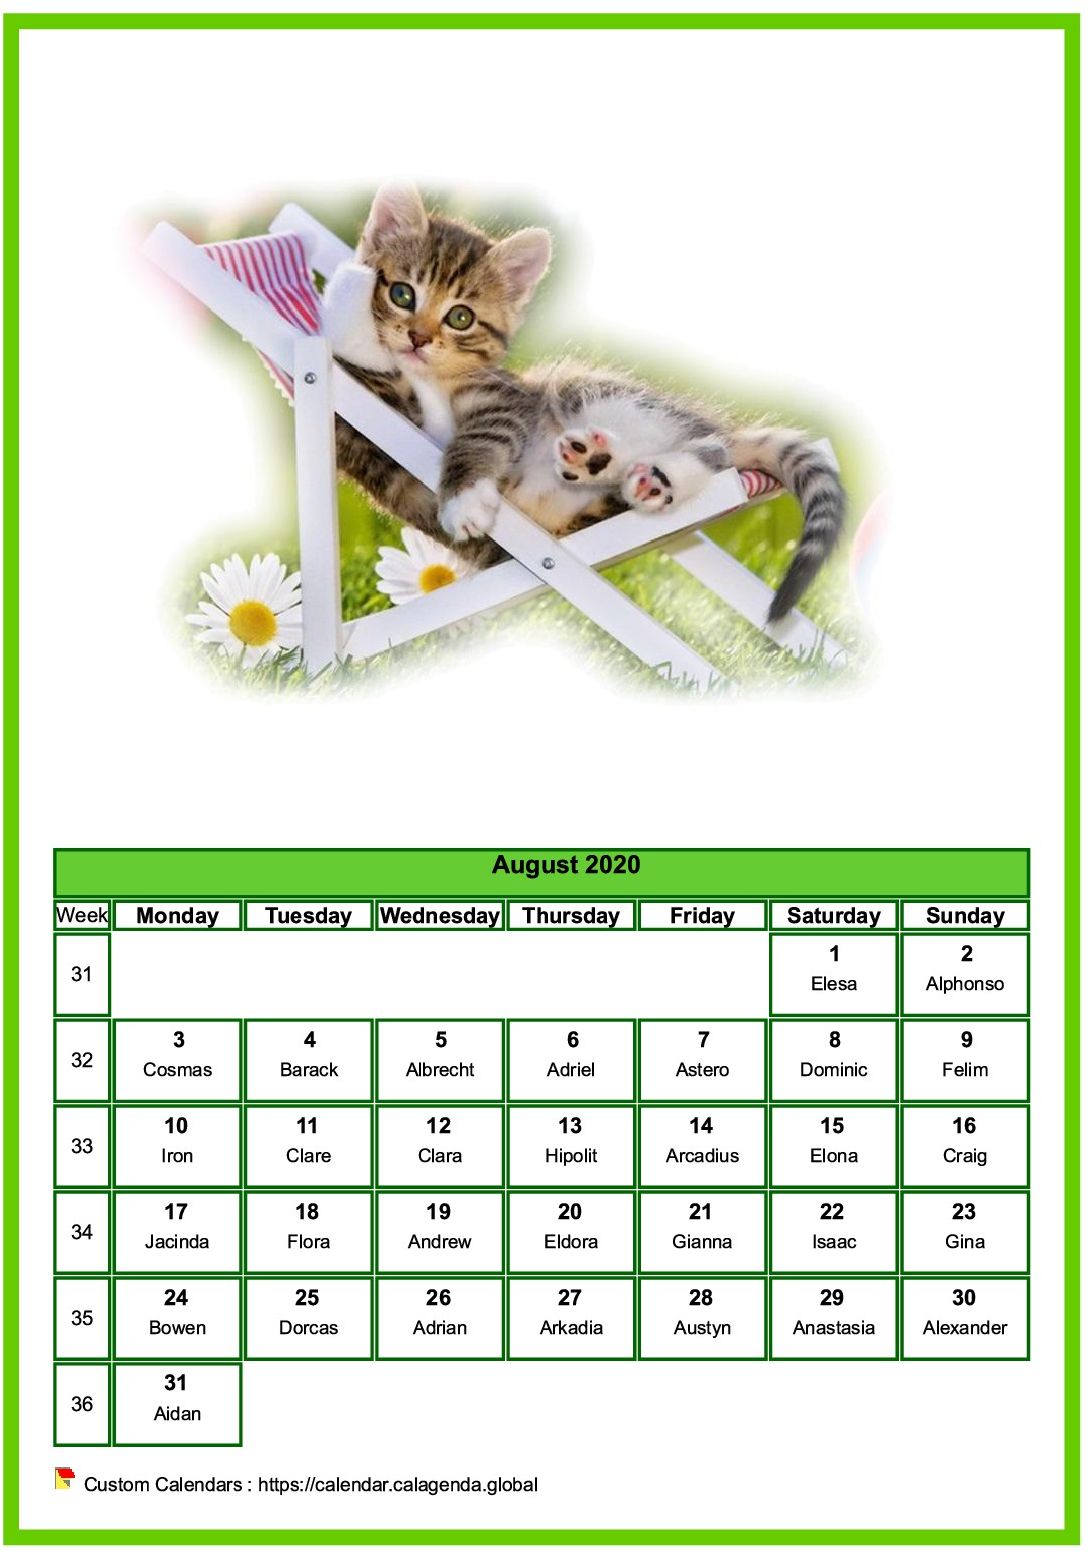 Calendar August 2020 cats